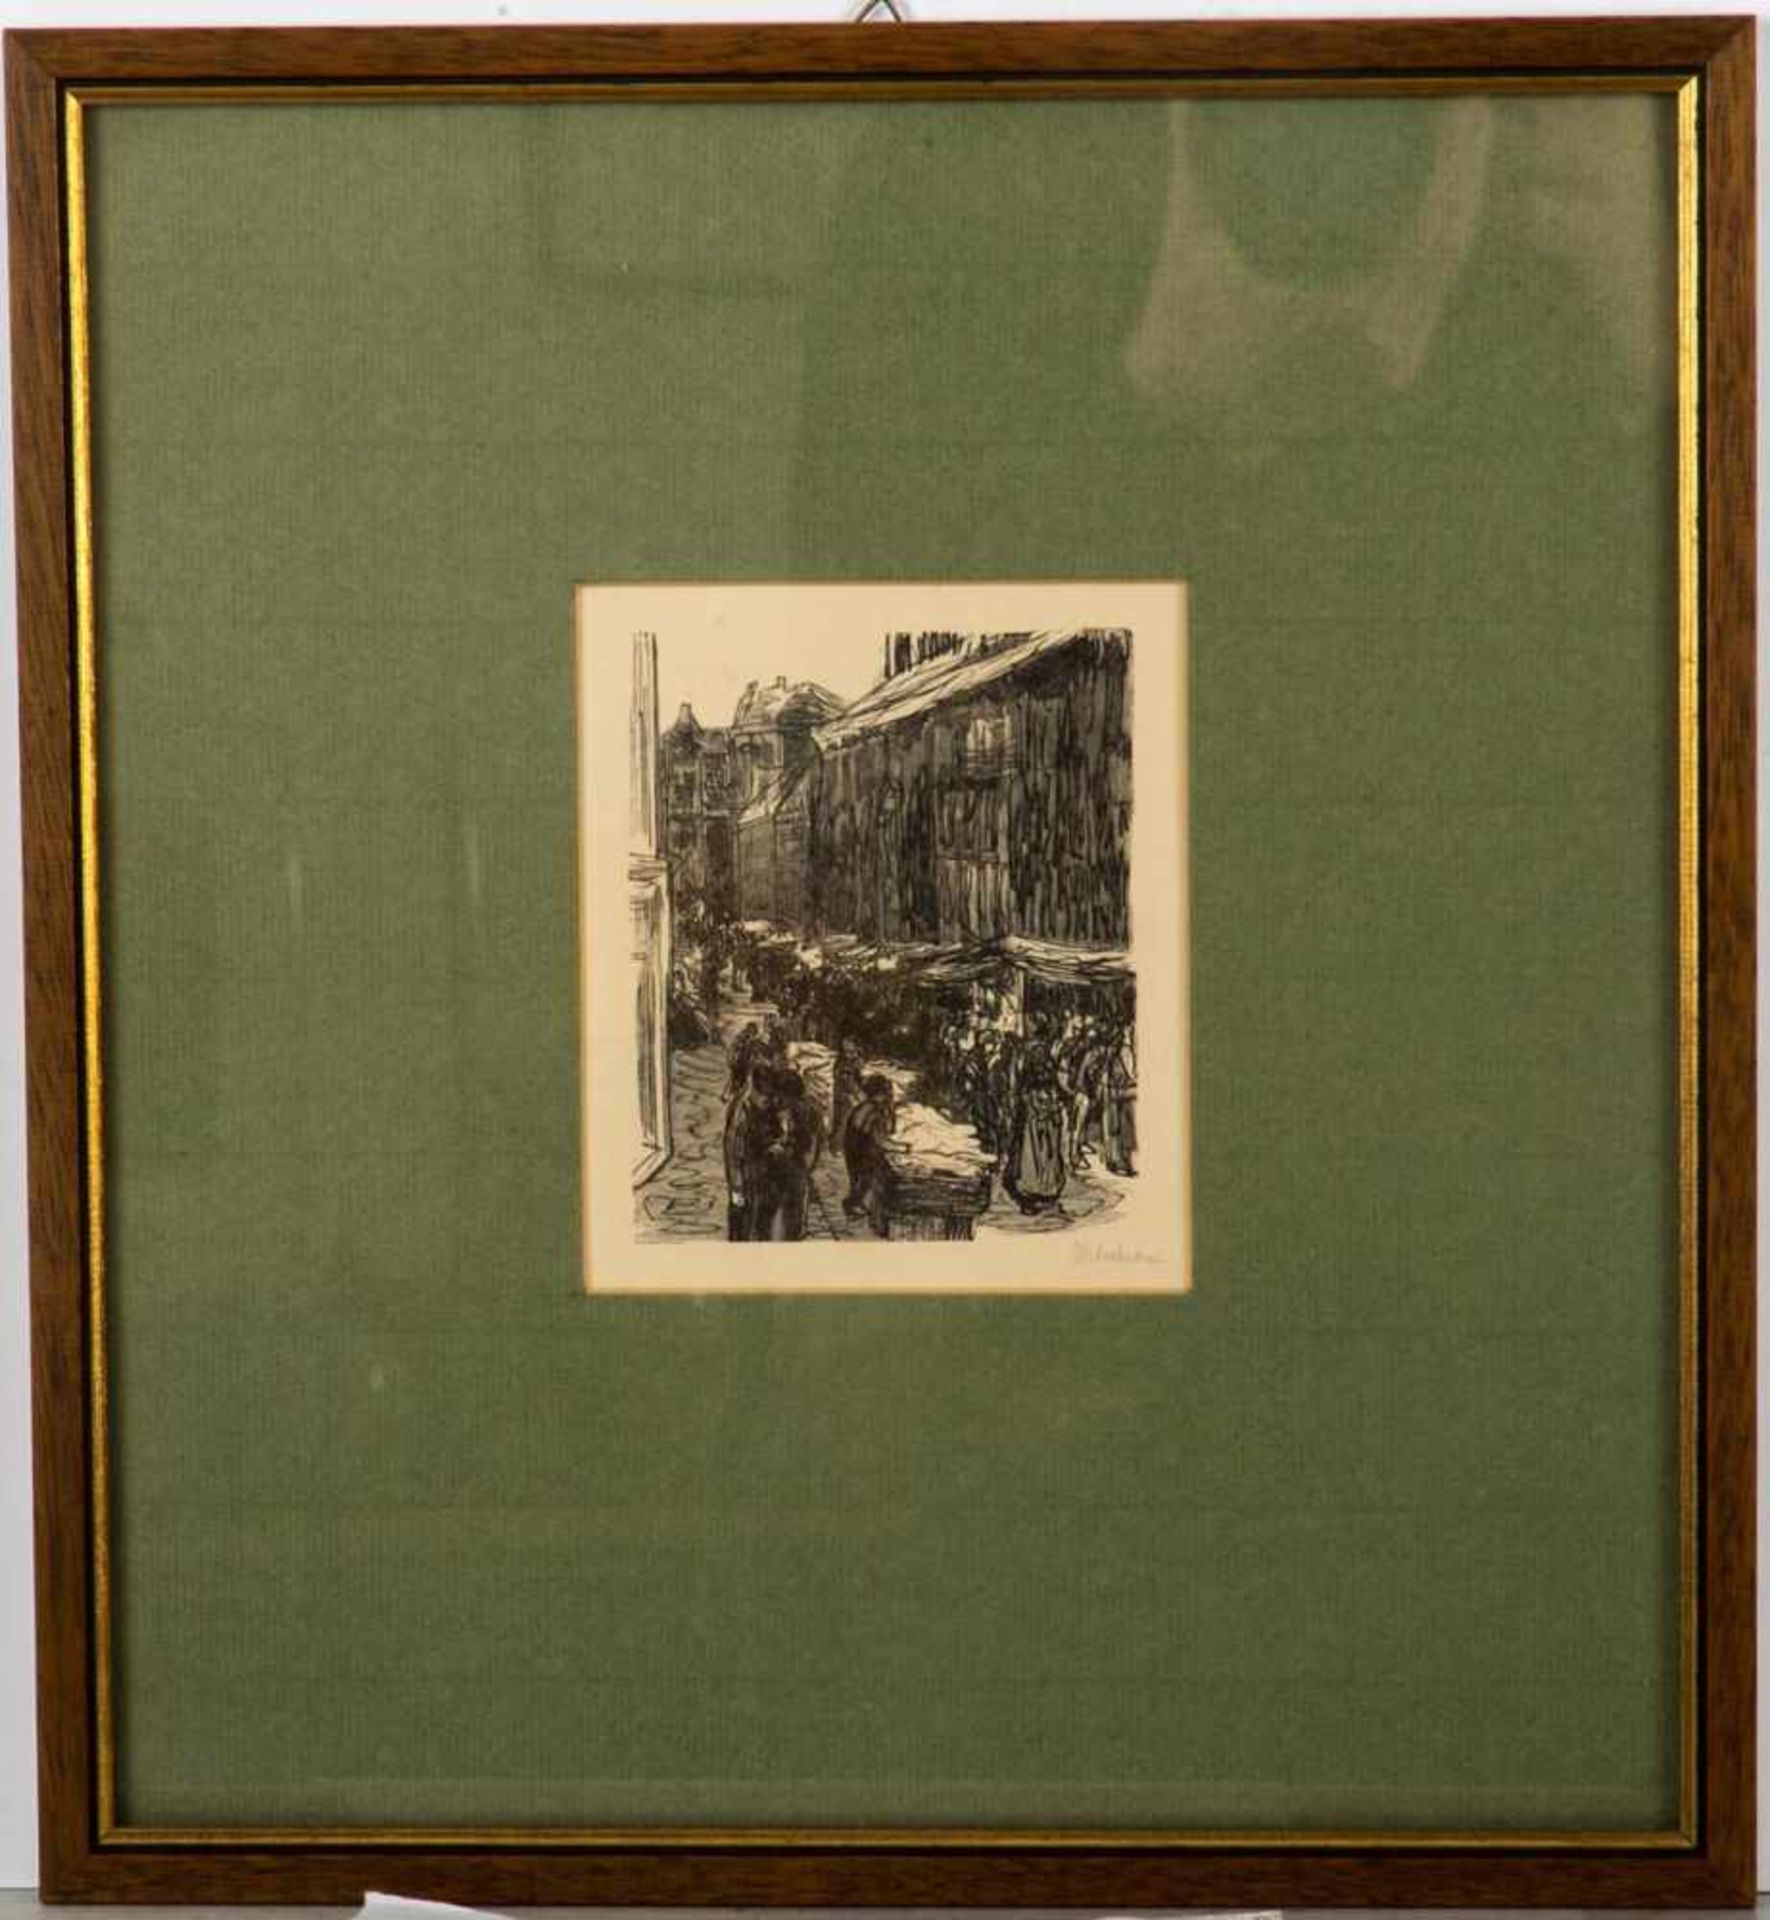 Liebermann, Max (1847 - Berlin - 1935)Judengasse in Amsterdam, 1922, Holzschnitt, sichtbarer